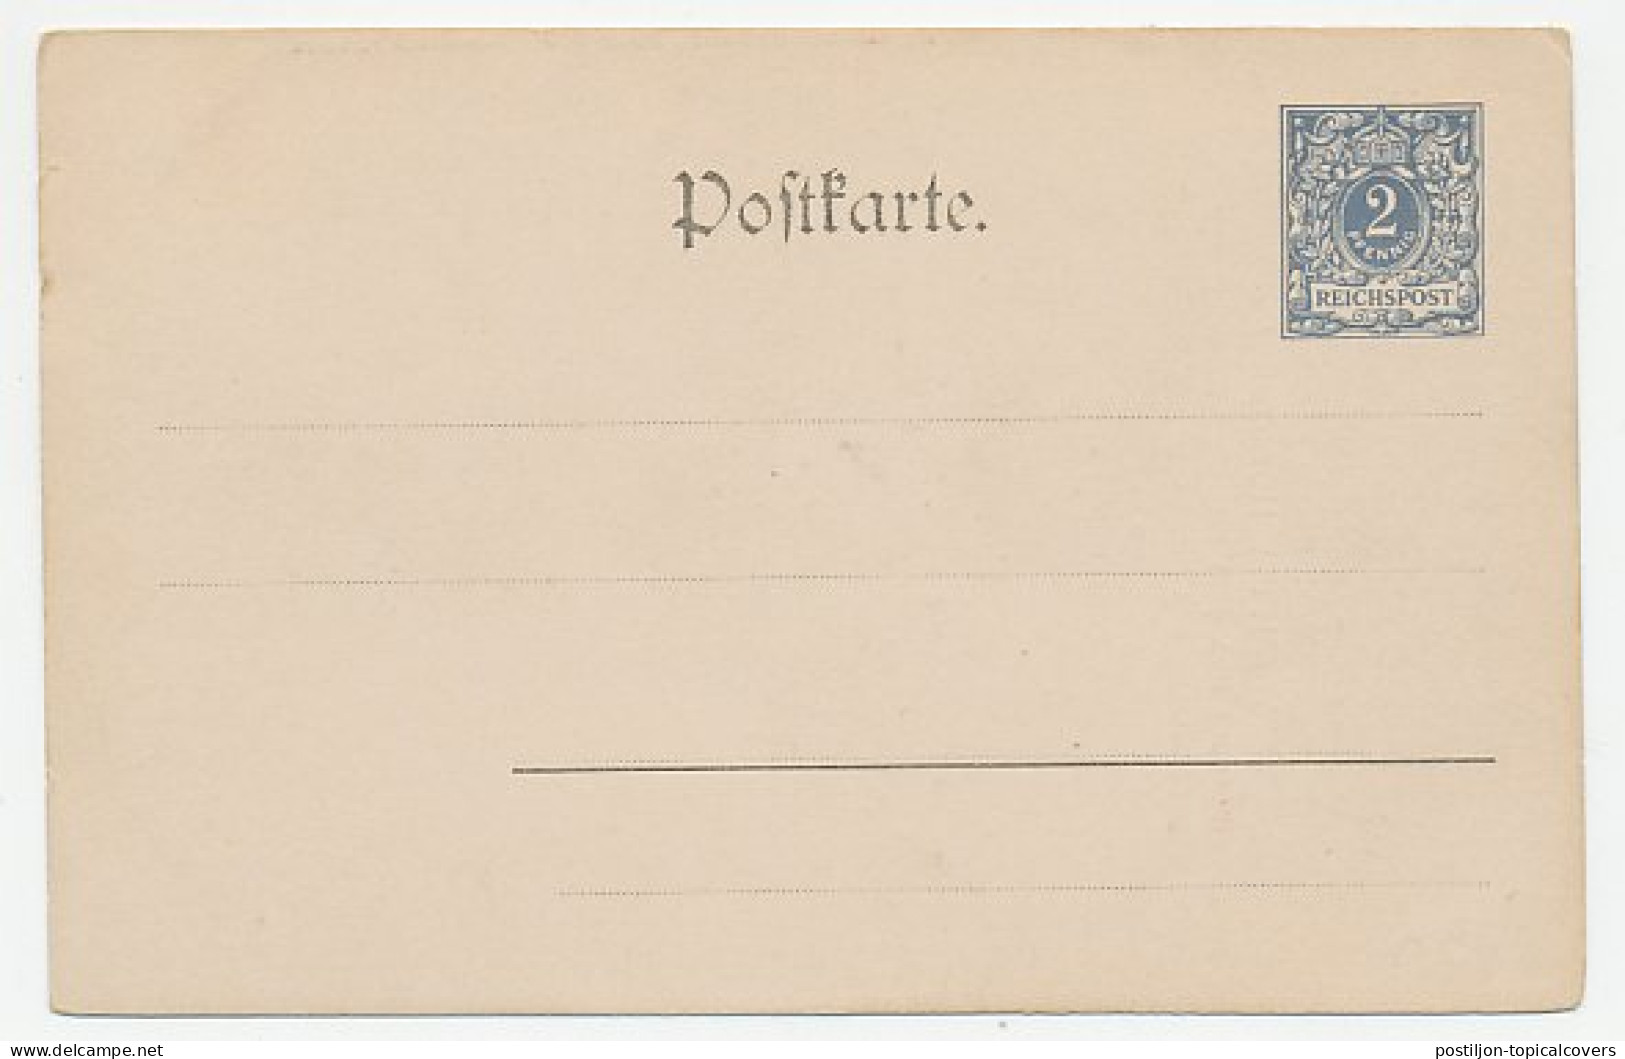 Postal Stationery Germany 1900 Crown Prince Friedrich Wilhelm - Familias Reales